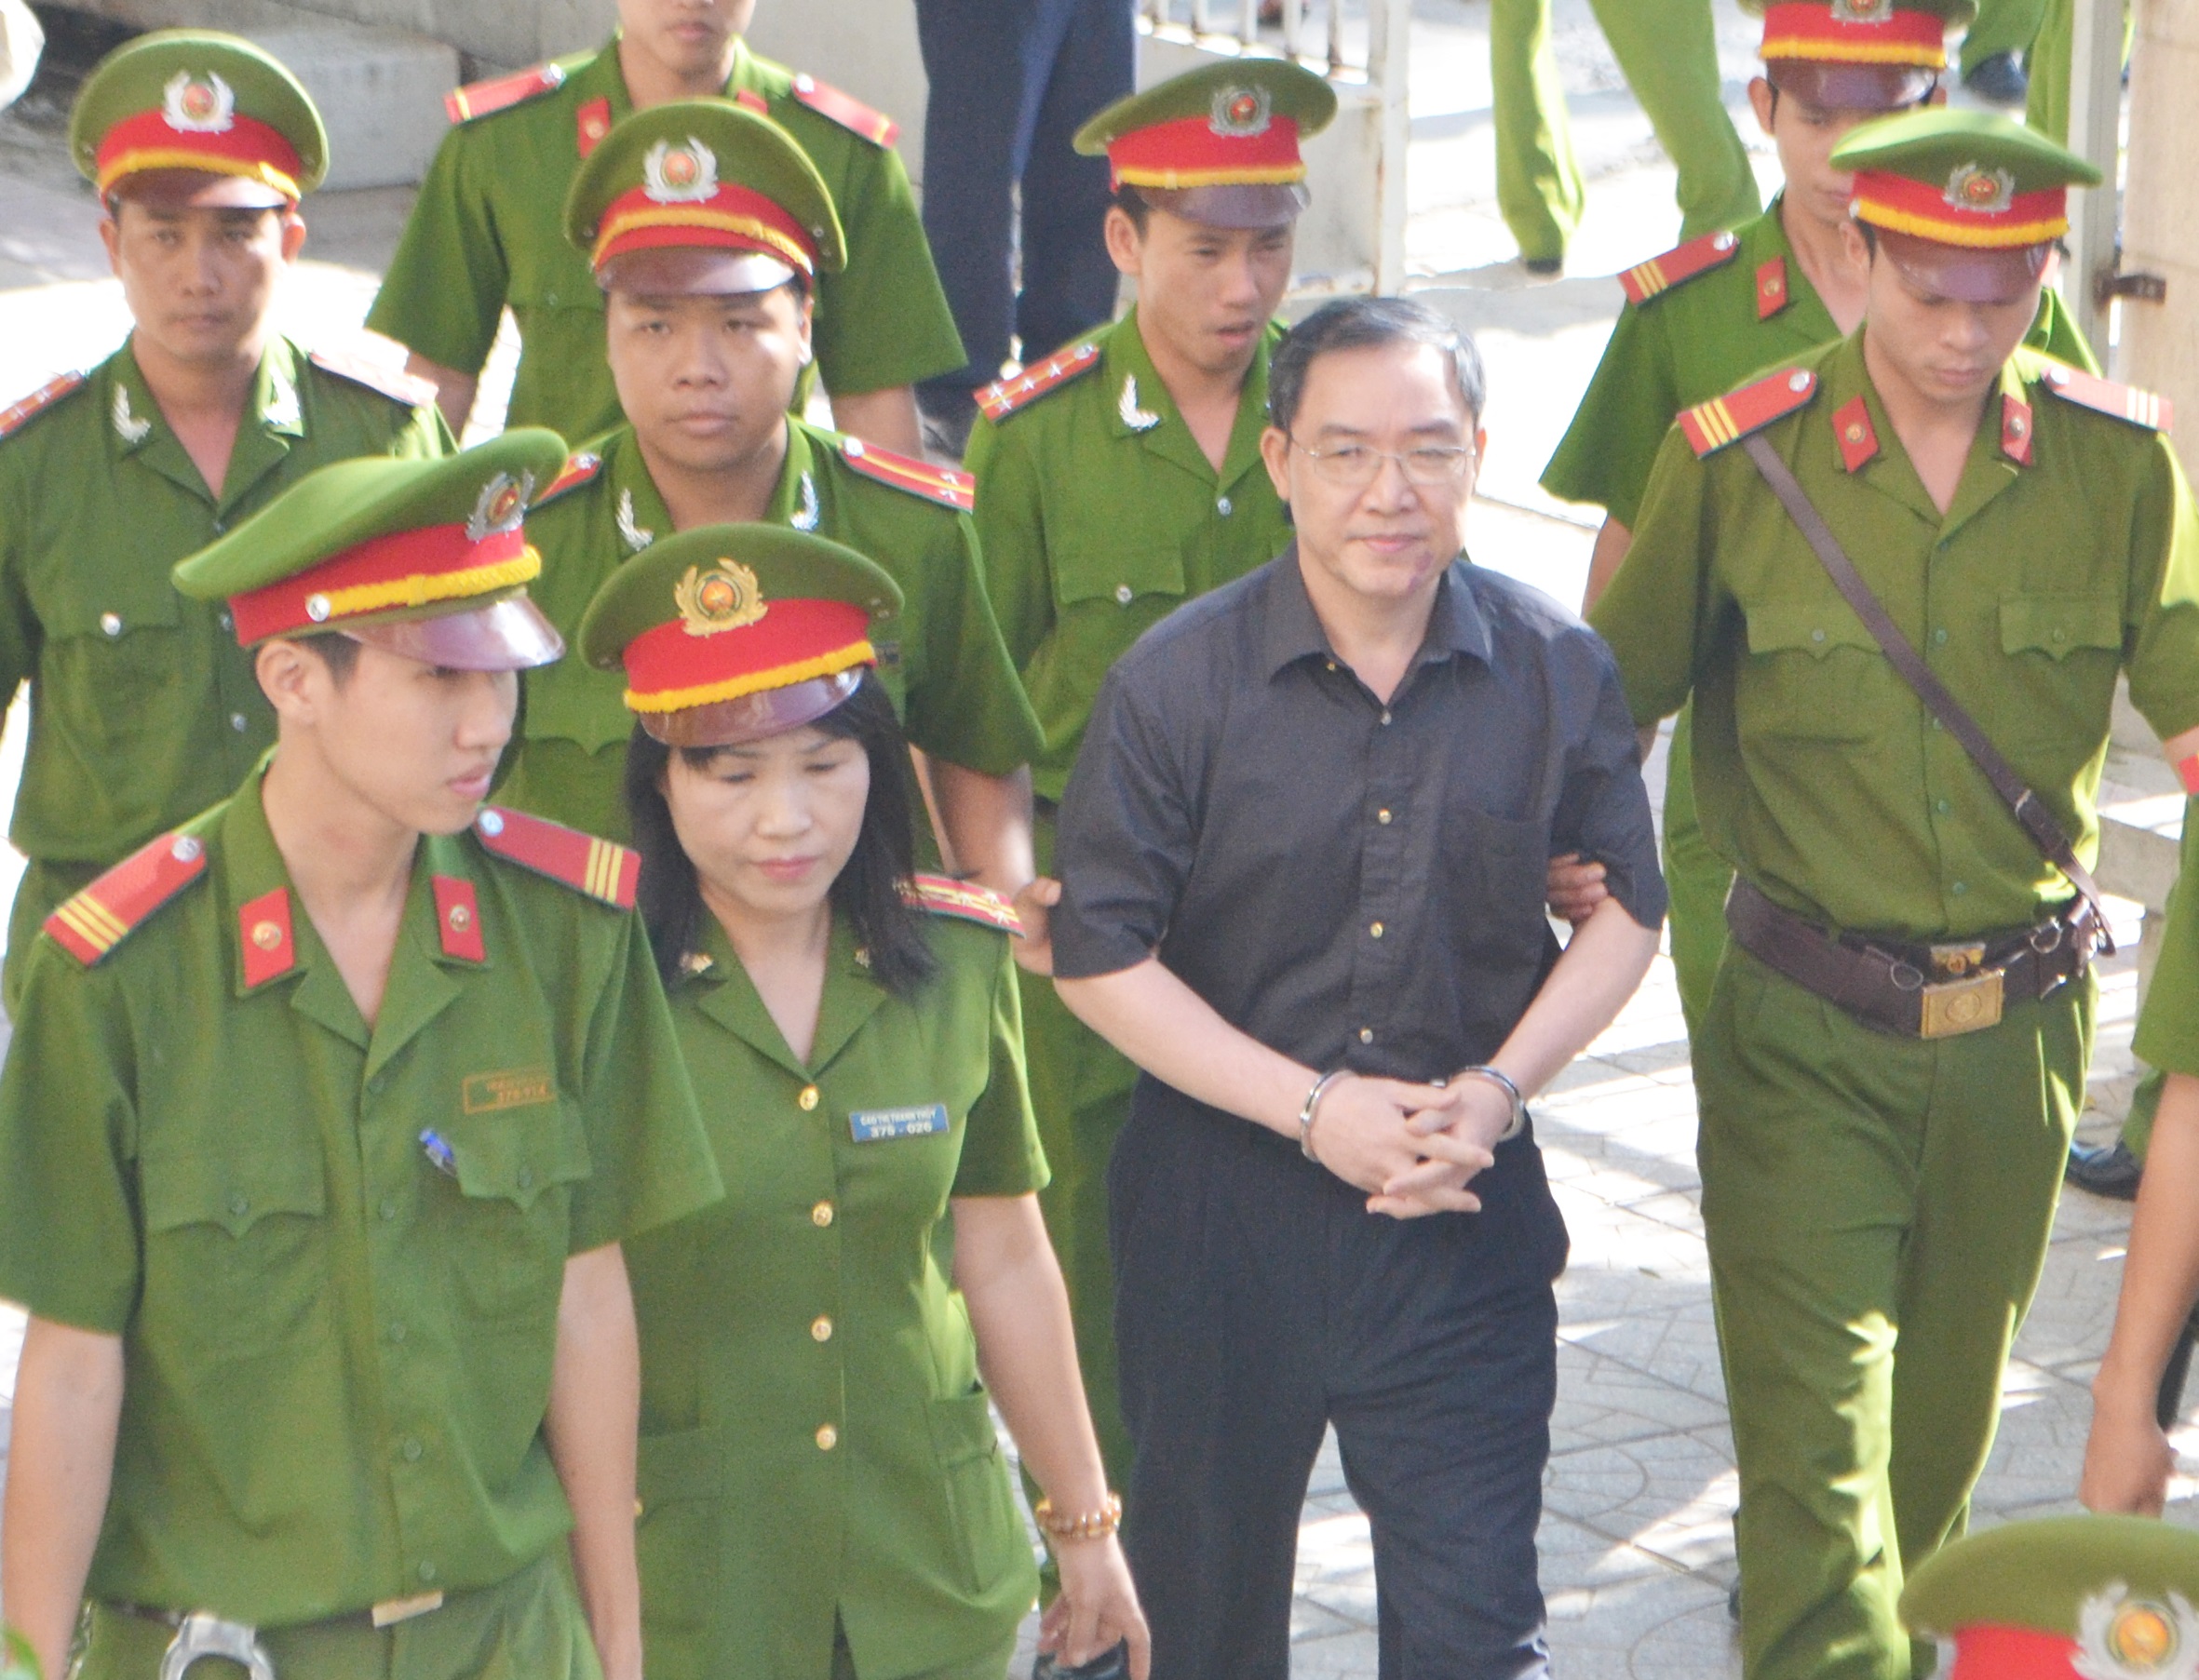 Sơn đang được lực lượng hỗ trợ tư pháp dẫn giải vào TAND tỉnh Khánh Hòa lúc 8h15 sáng nay 11/11.